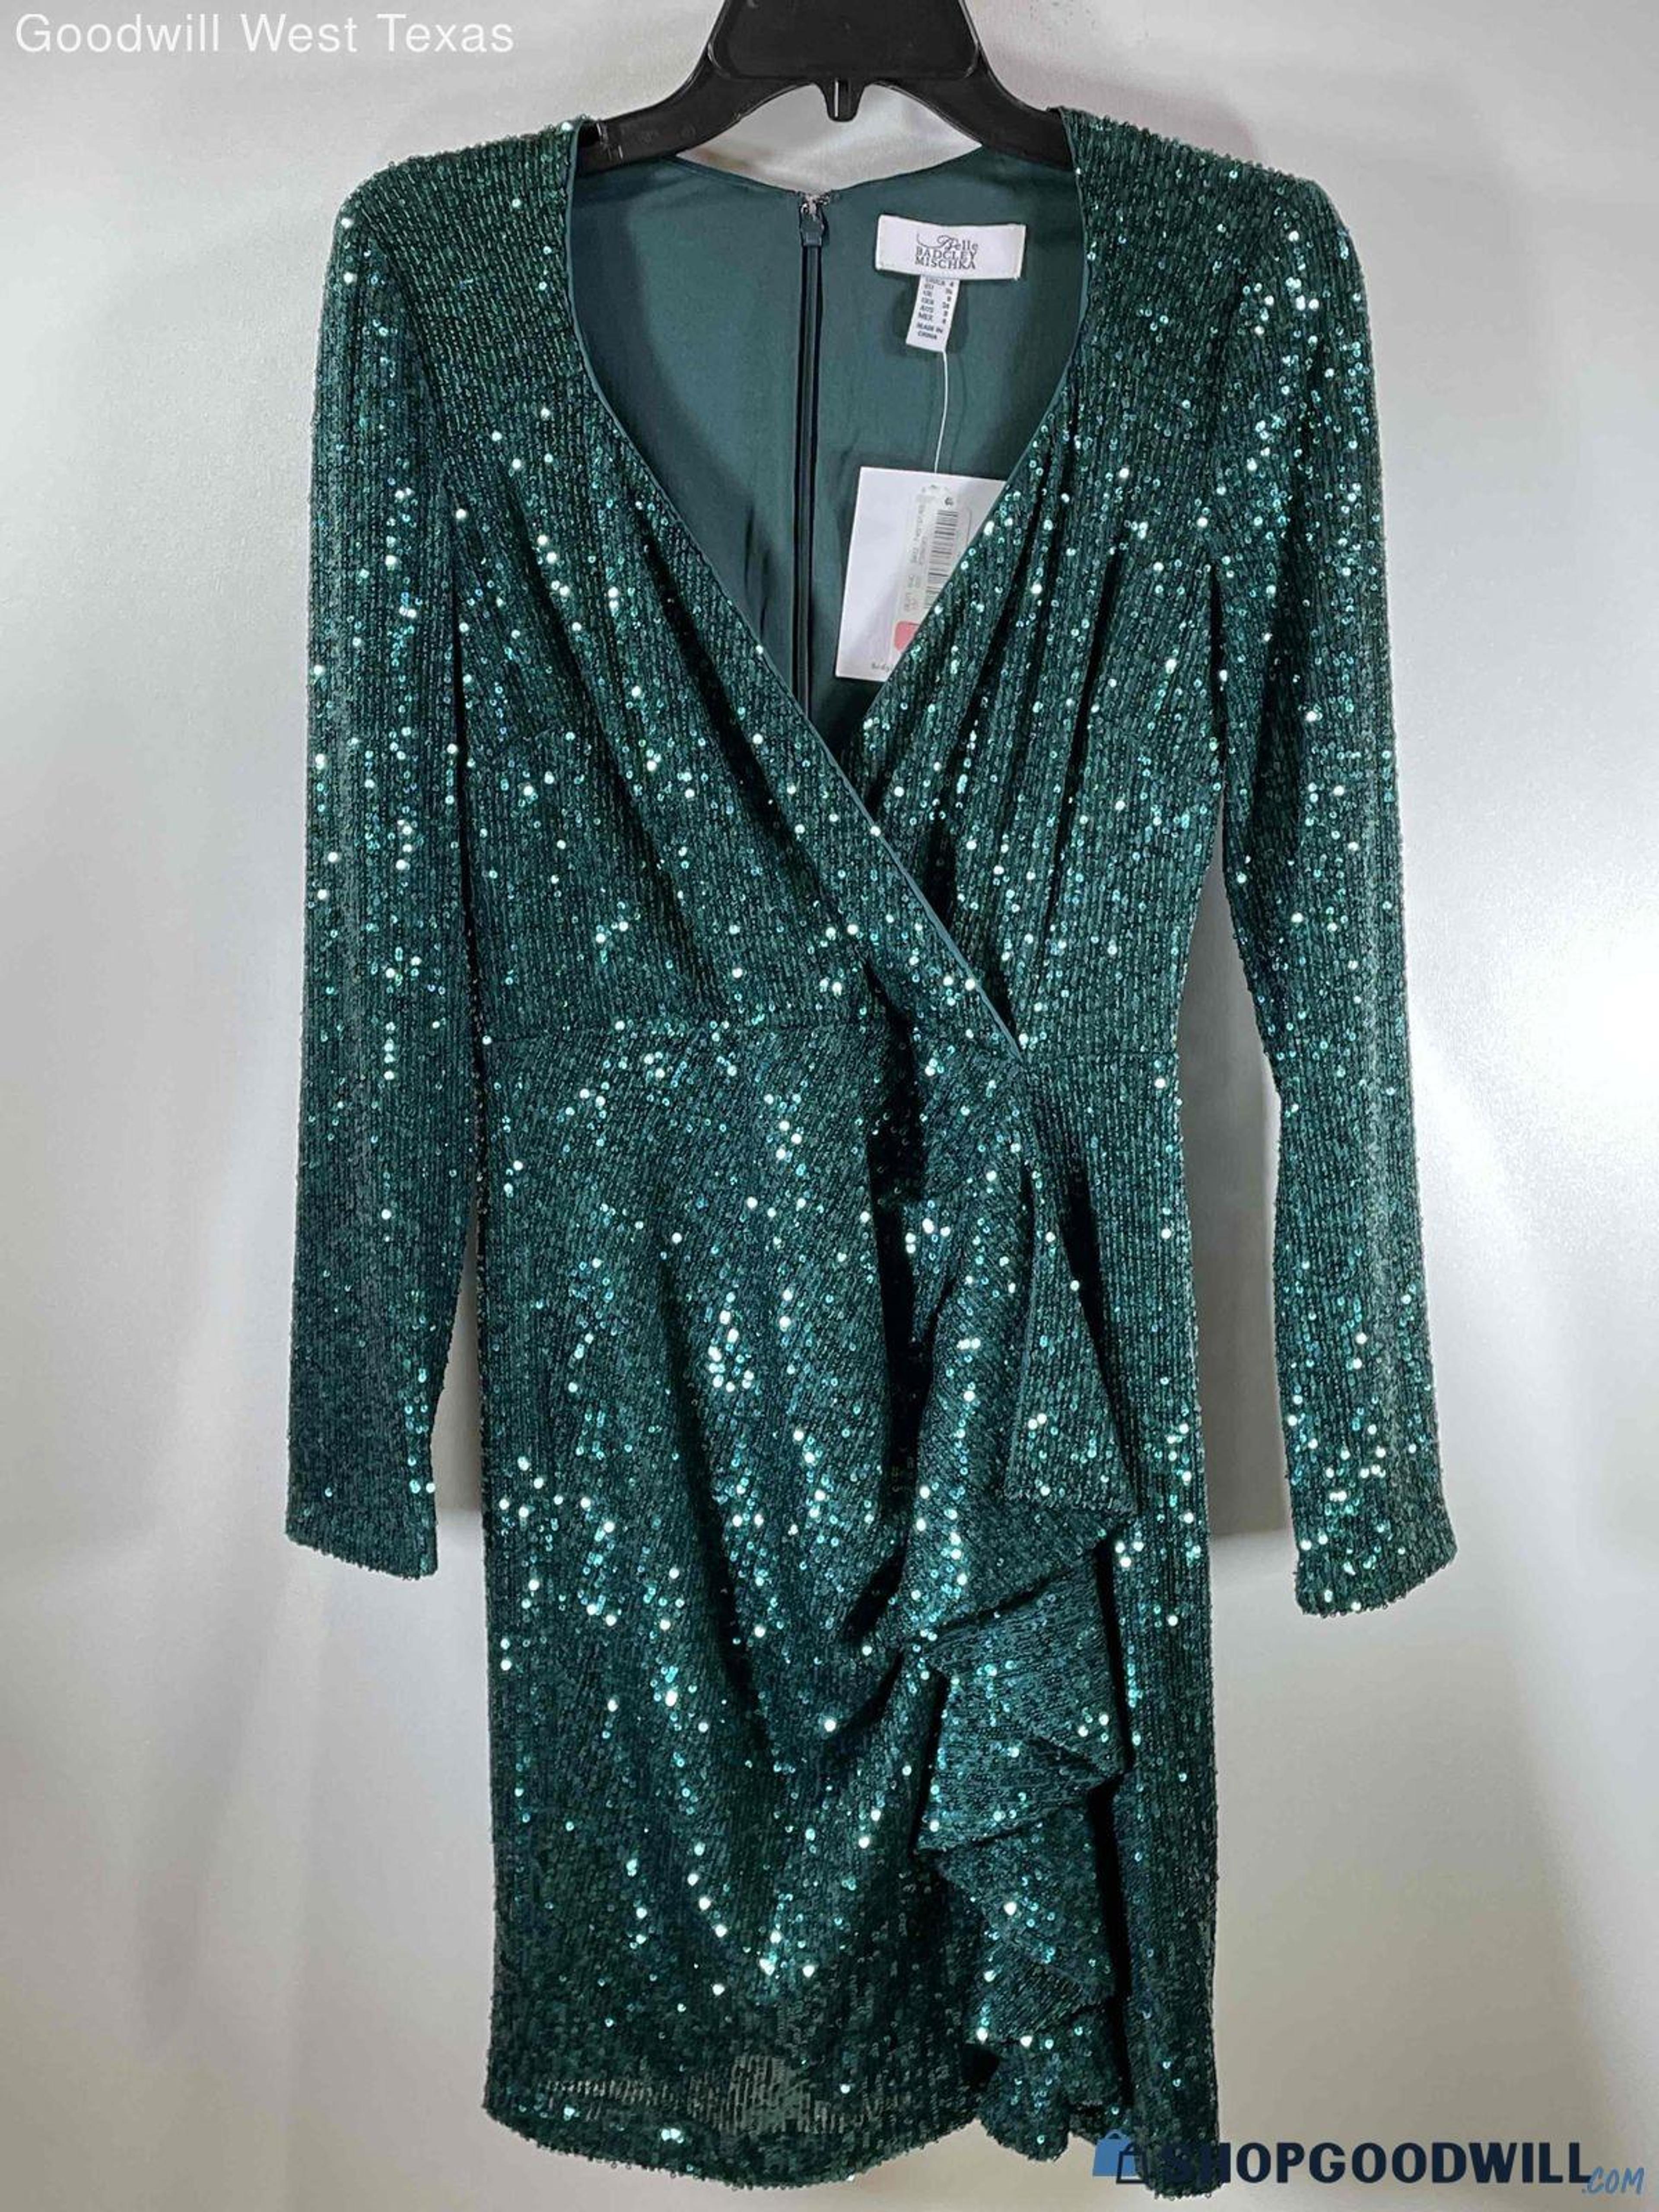 Women's Badgley Mischka Emerald Green Sequin Dress Size 4 - shopgoodwill.com